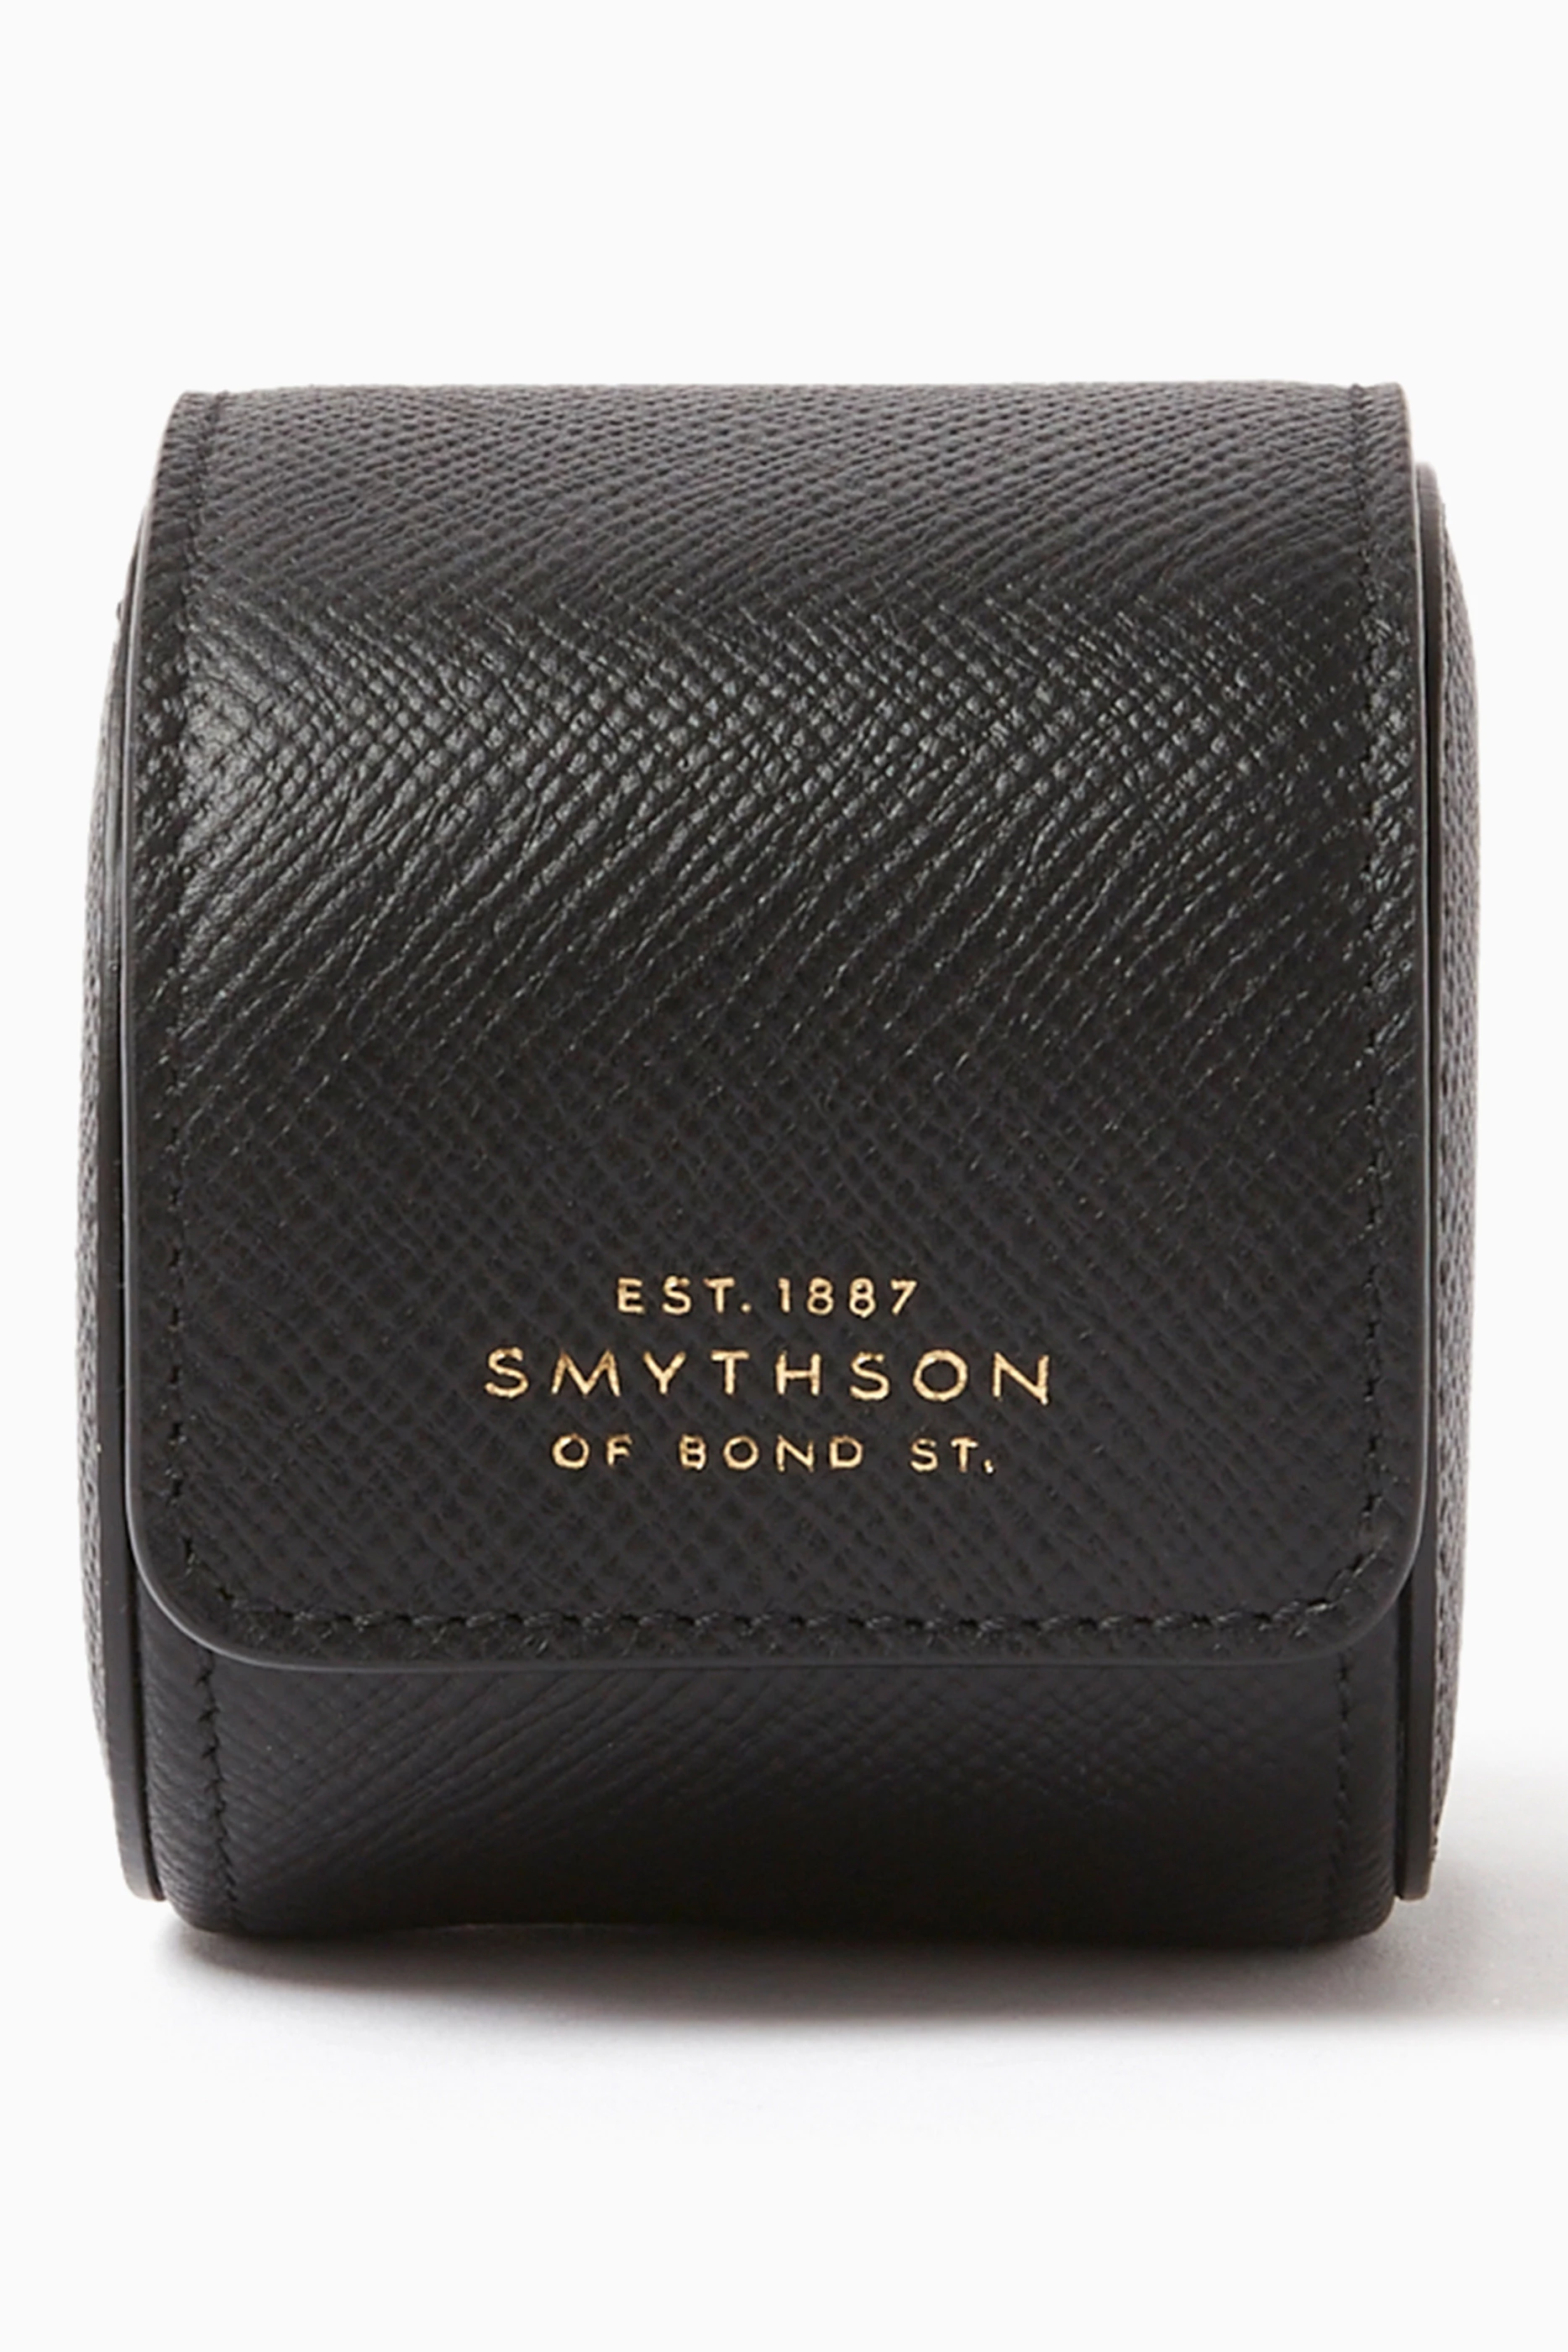 Smythson Watch Accessories Watch Rolls